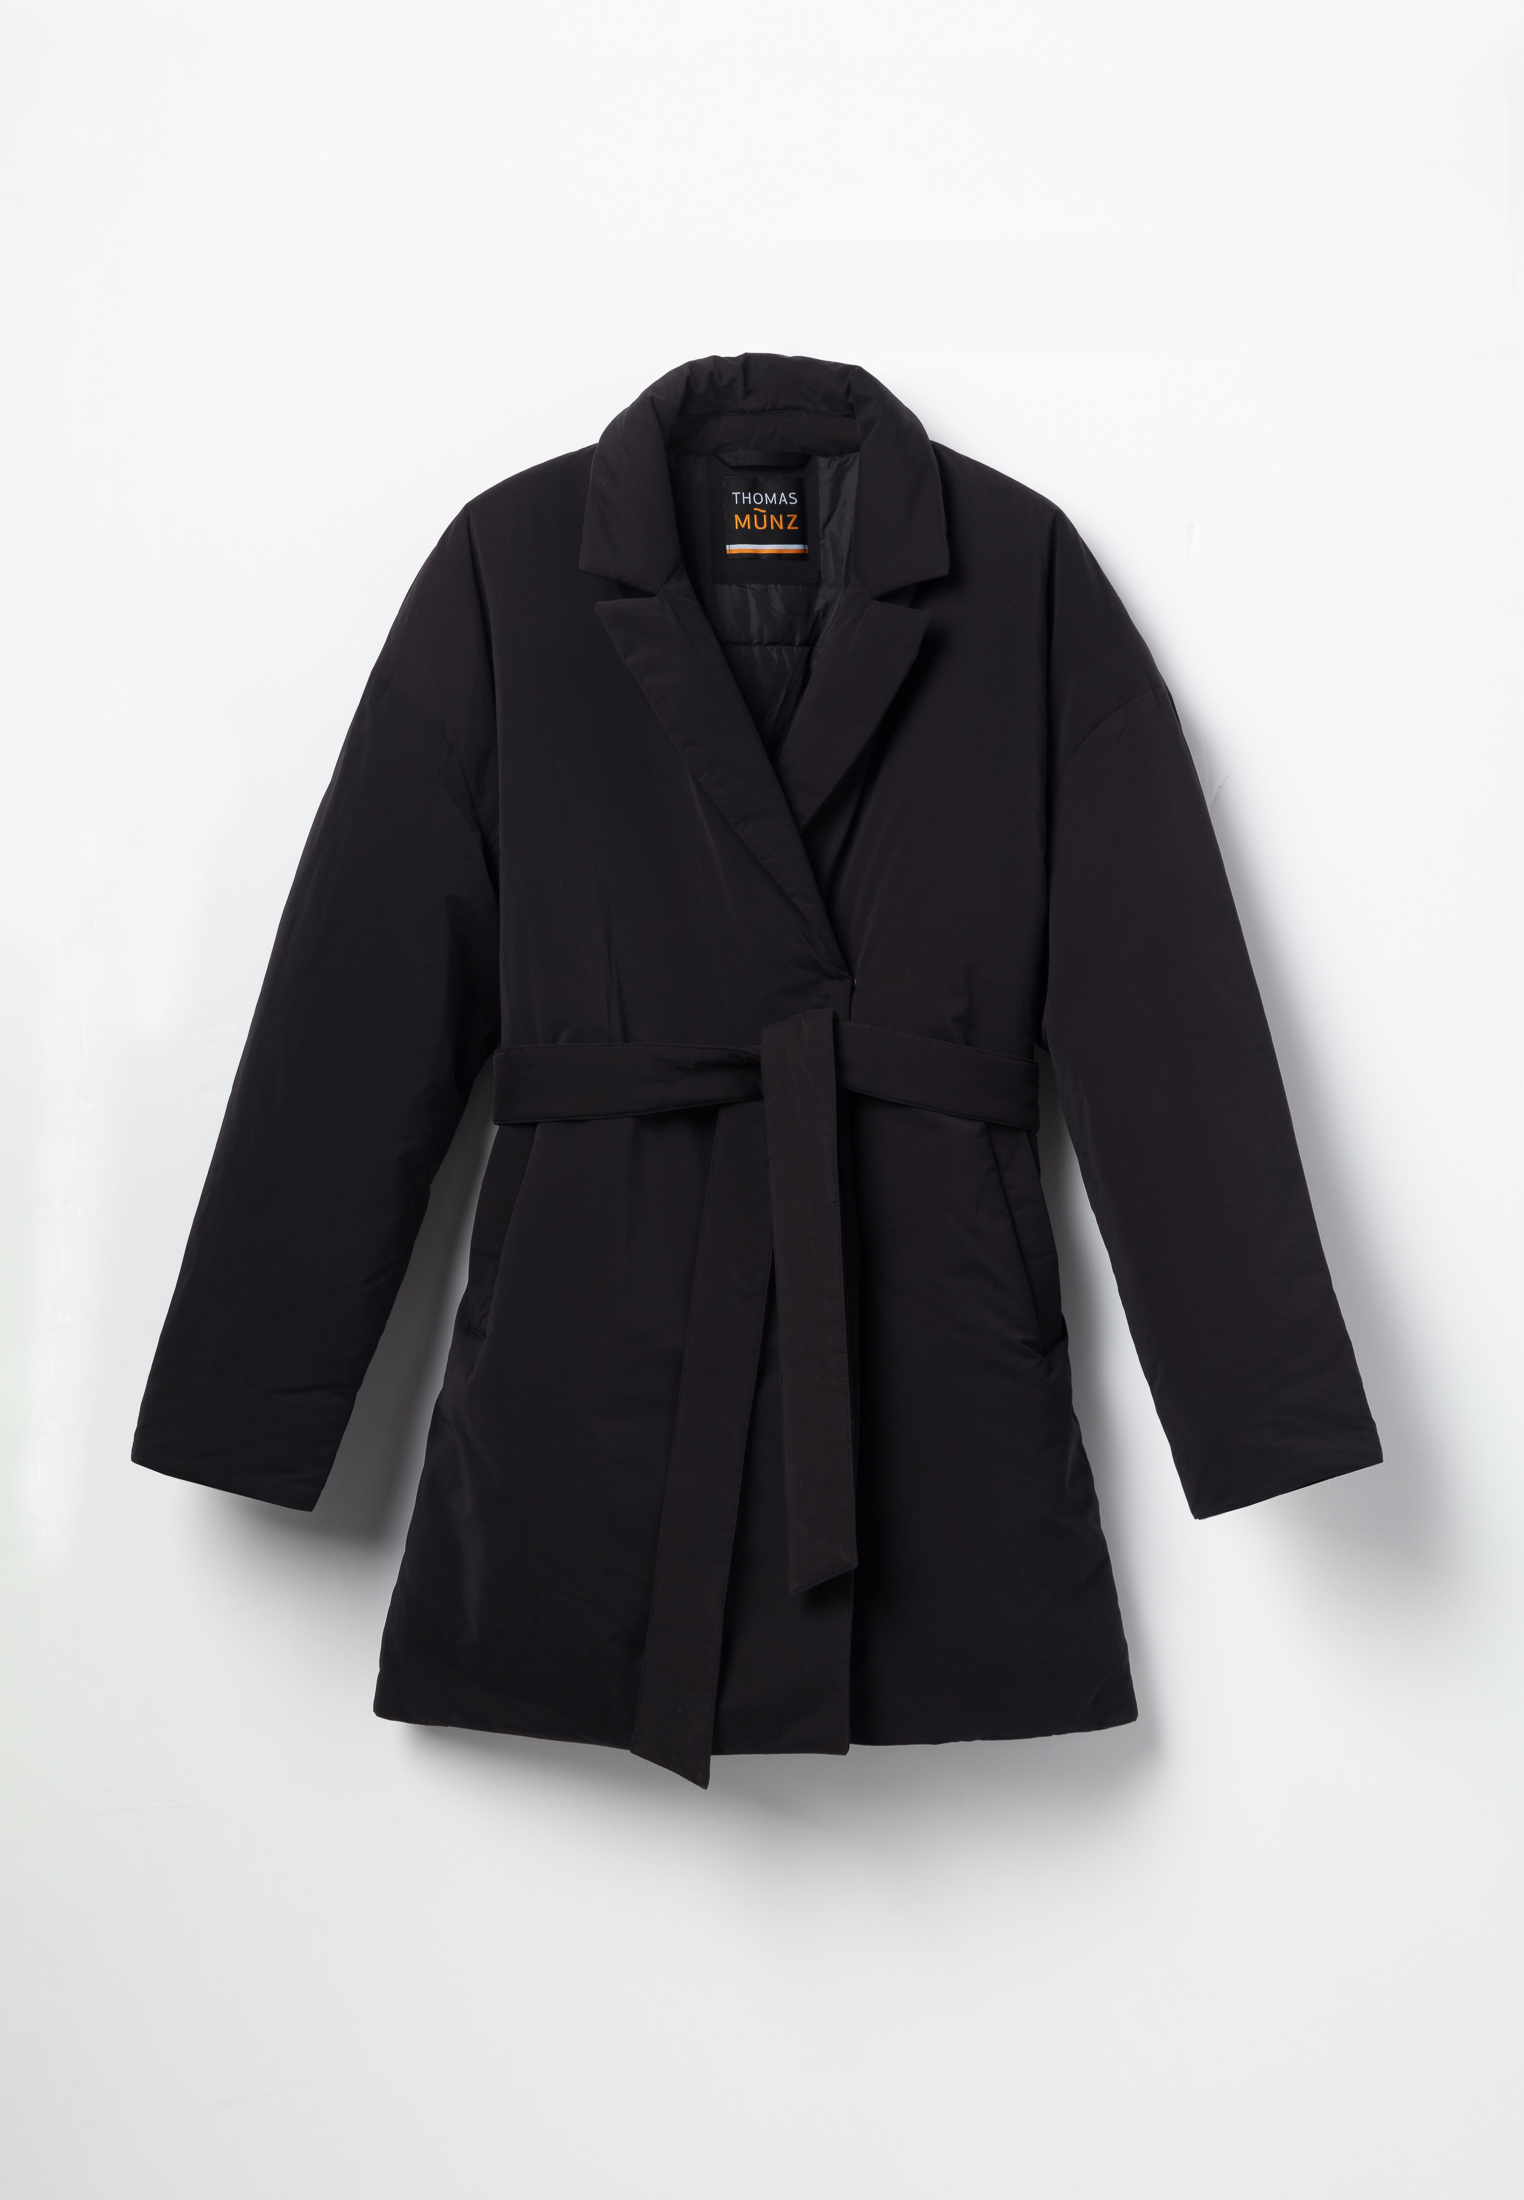 Куртка Thomas Munz 859-32N-0102, цвет черный, размер 48-170